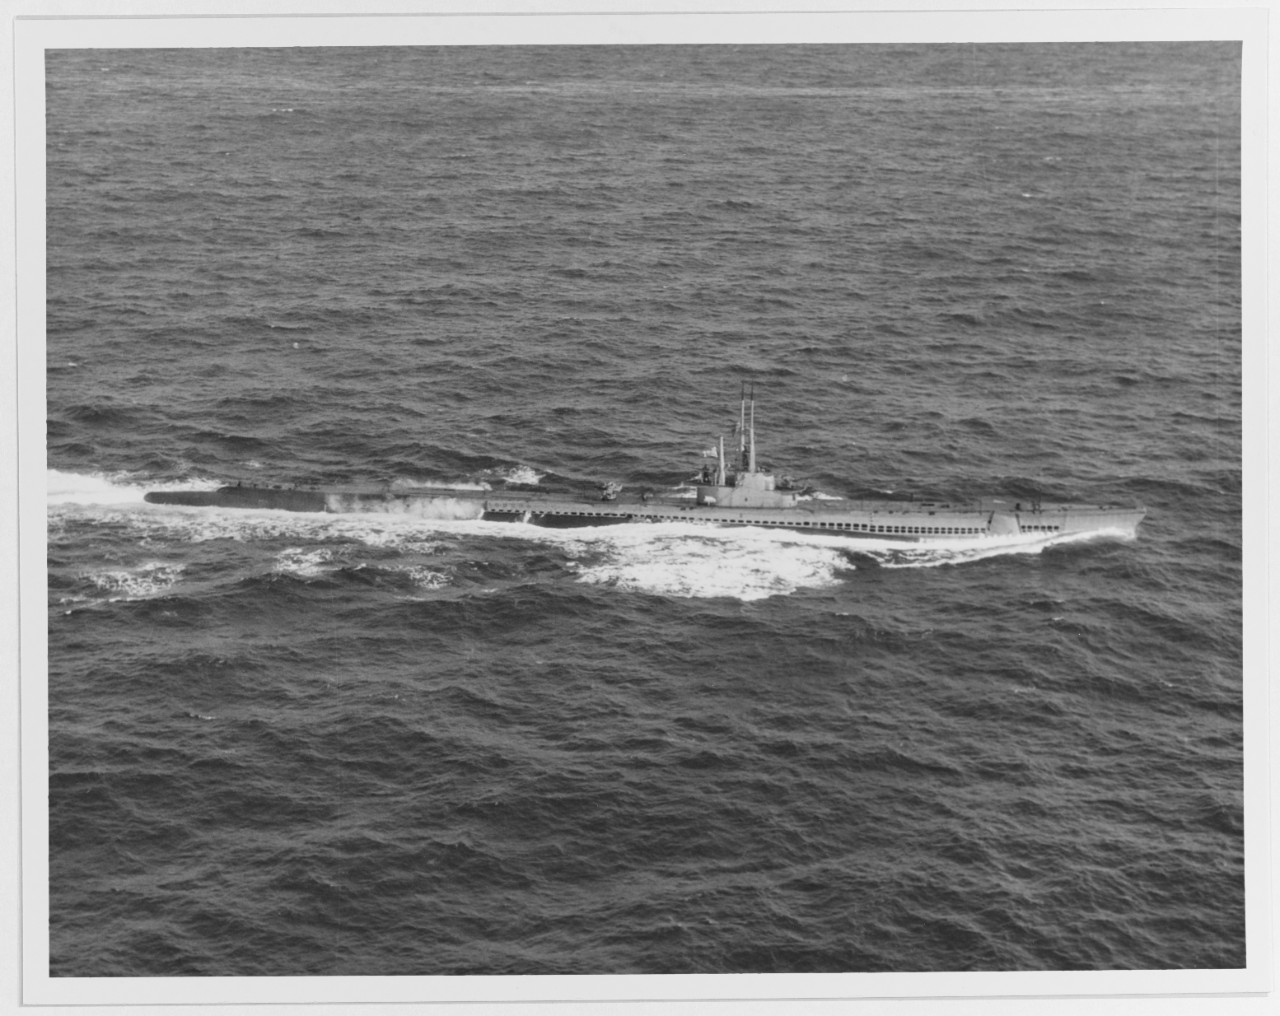 USS TORSK (SS-423)